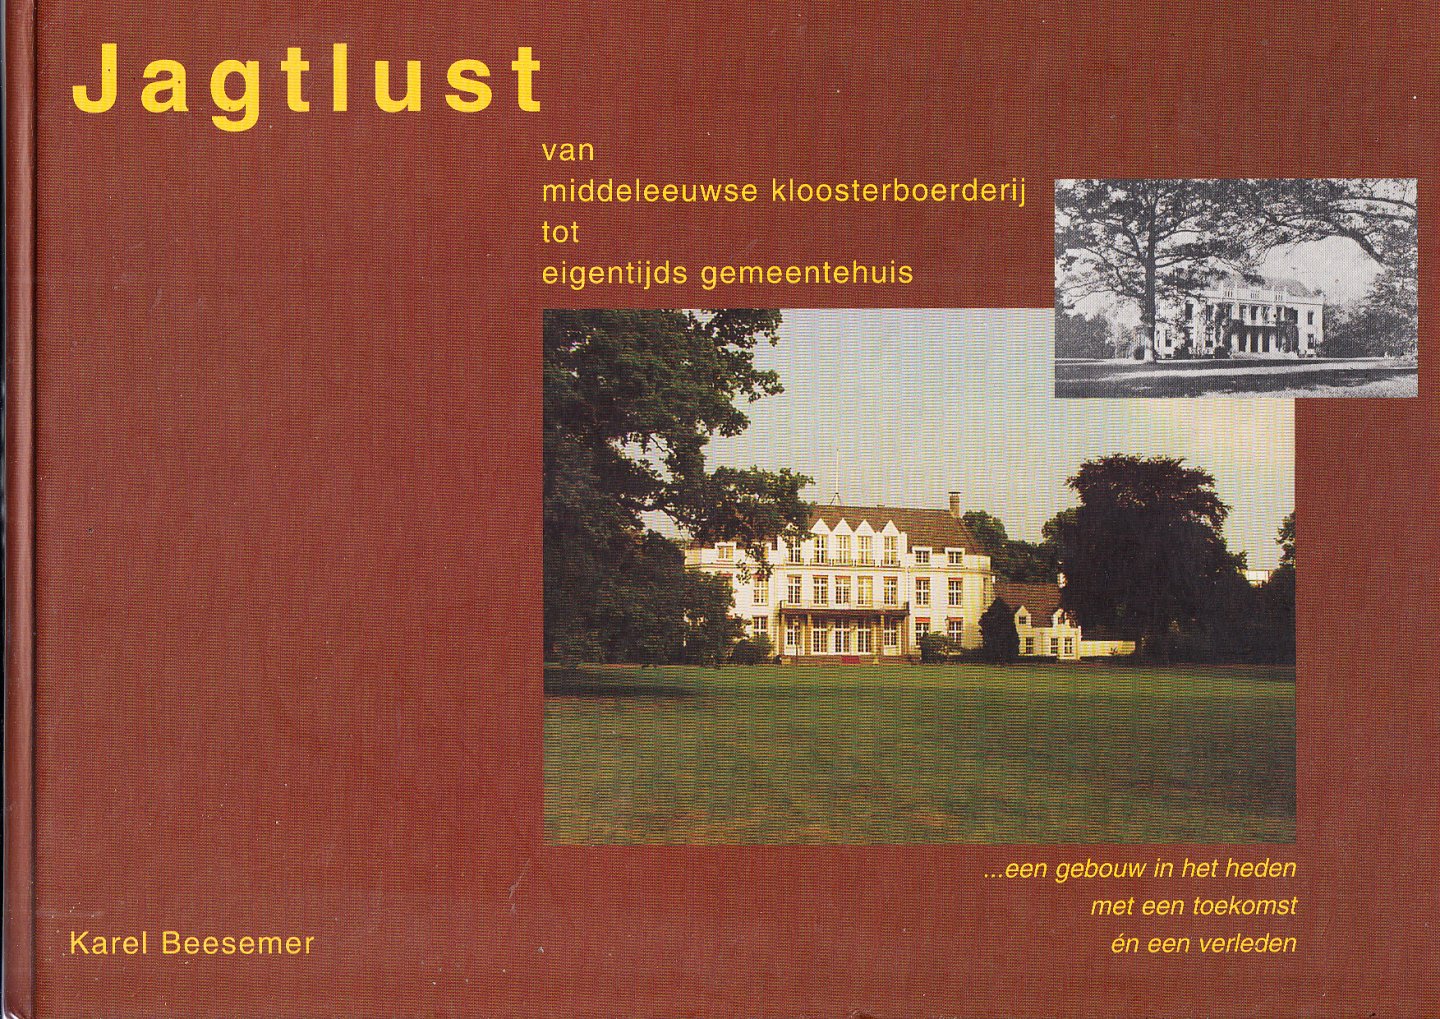 Beesemer, Karel - De Bilt Jagtlust - Van middeleeuwse kloosterboerderij tot eigentijds gemeentehuis.